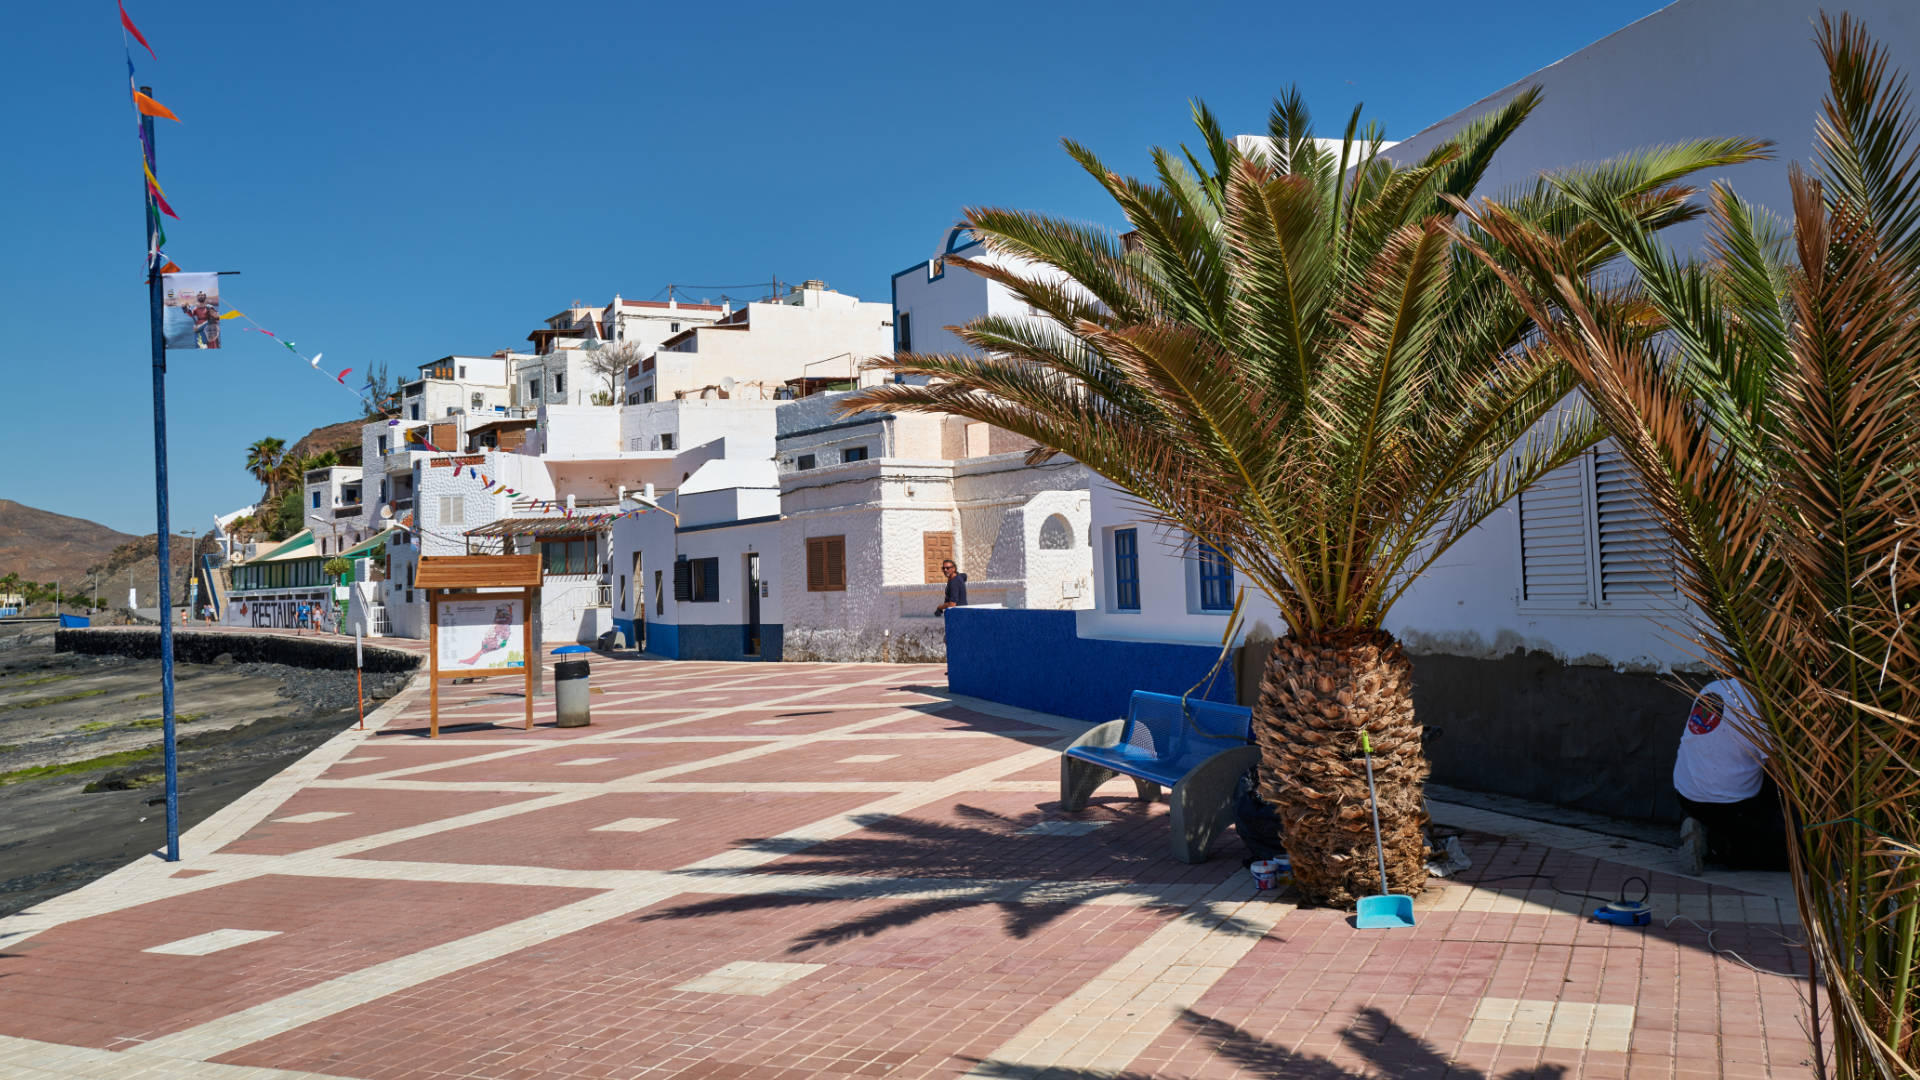 Der Ort Las Playitas auf Fuerteventura.